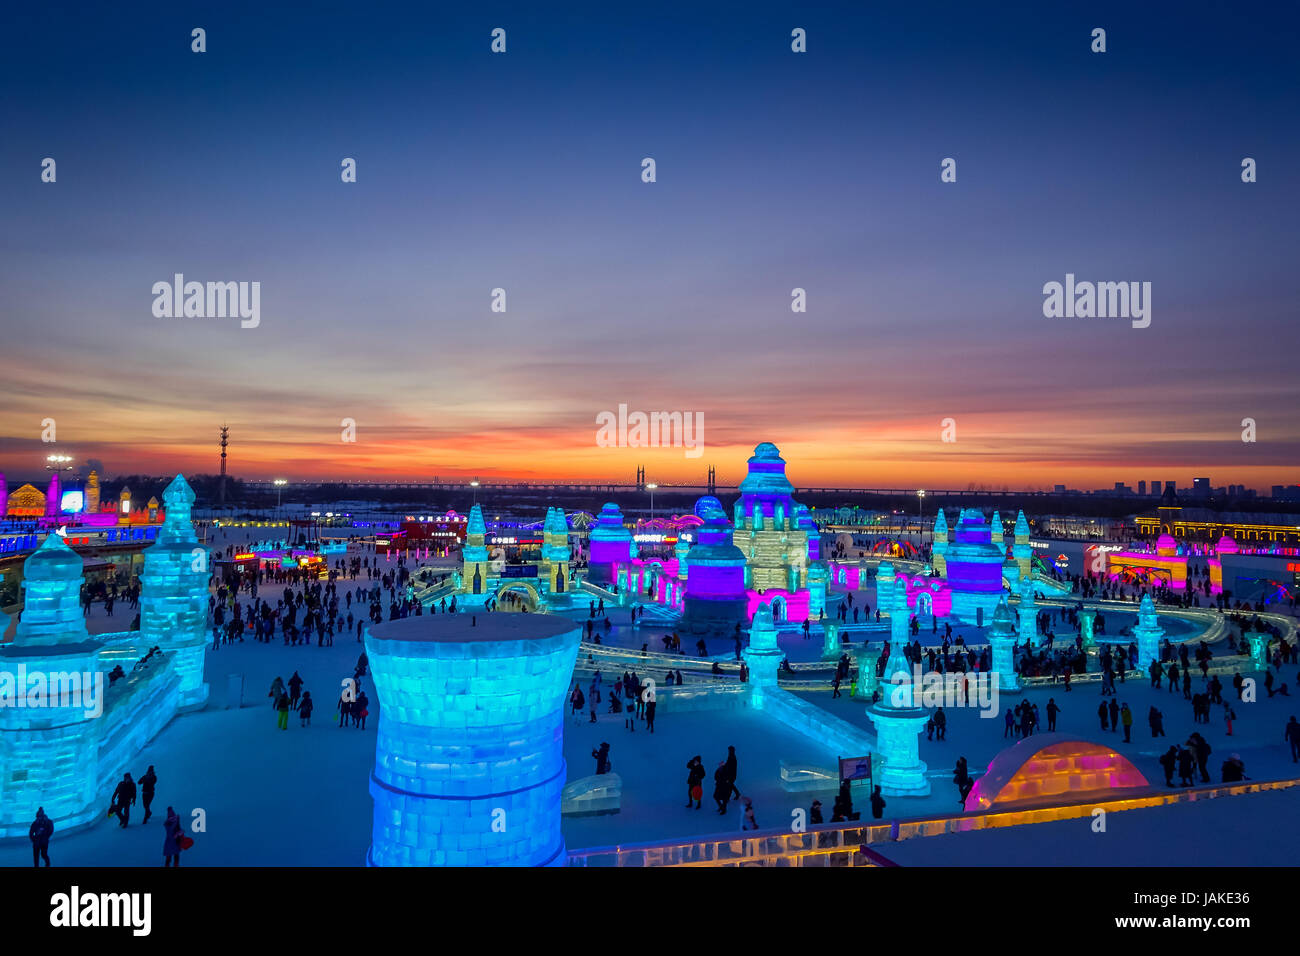 Harbin, China - 9. Februar 2017: Schöne und bunte Harbin internationale Eis- und Schneeskulpturen-Festival veranstaltet jährlich im Winter. Stockfoto